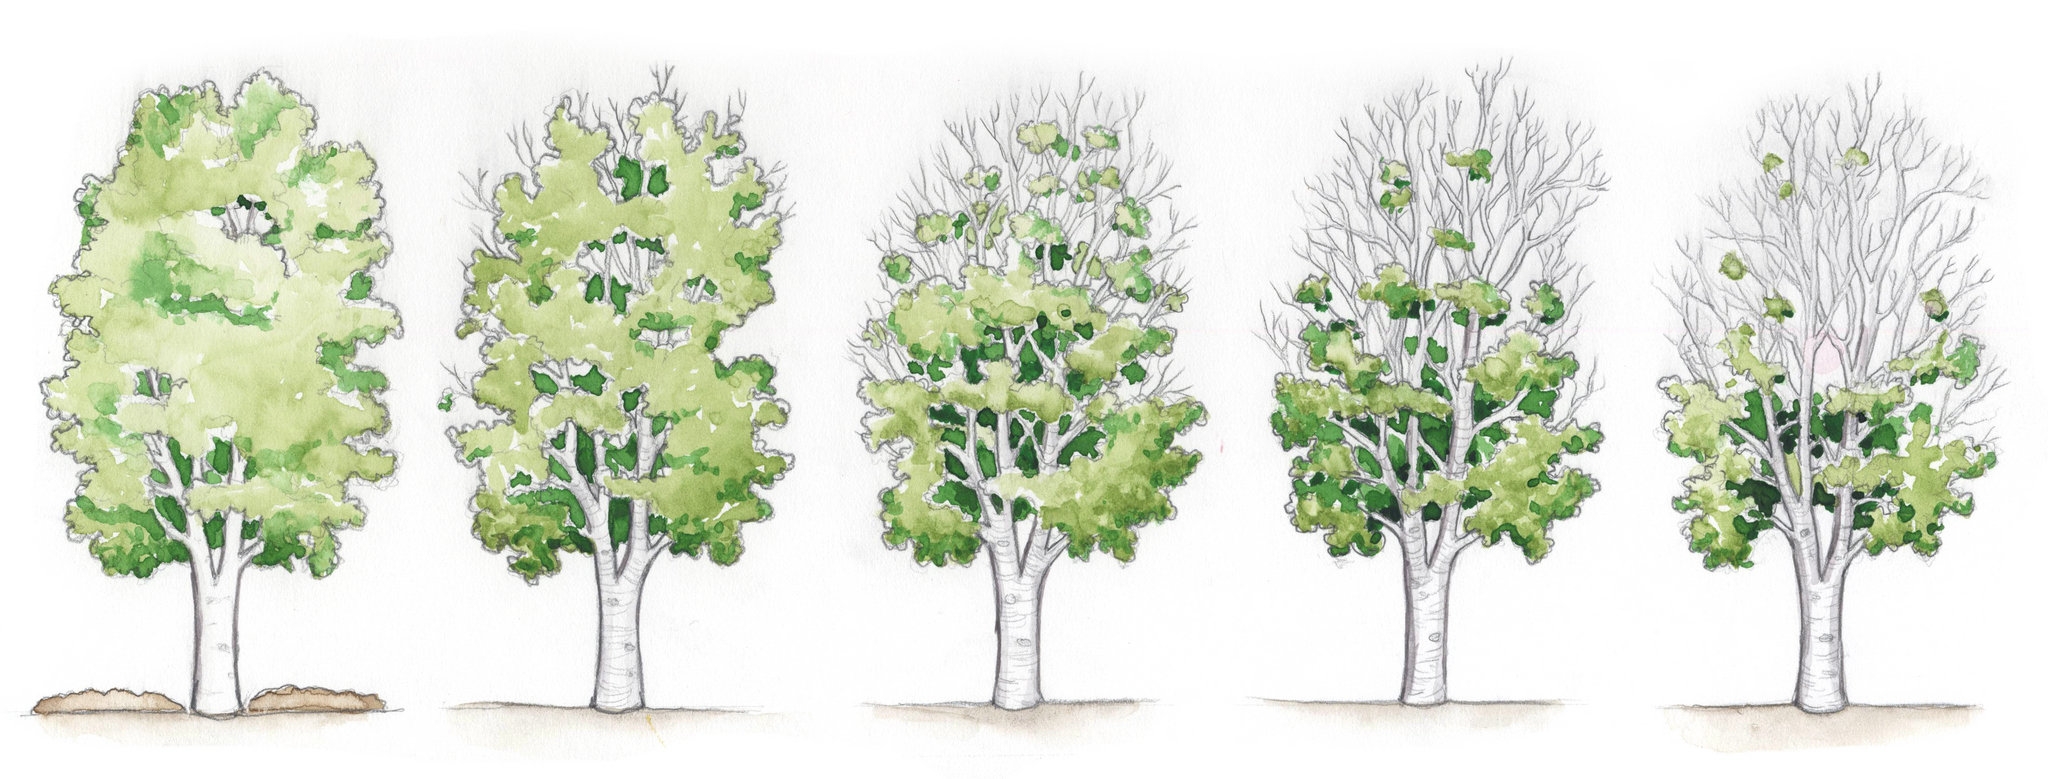 Группа деревьев 7. Береза рисунок. Дерево группа березы. Береза в Разное время года. Рисование берёза в Разное время года.